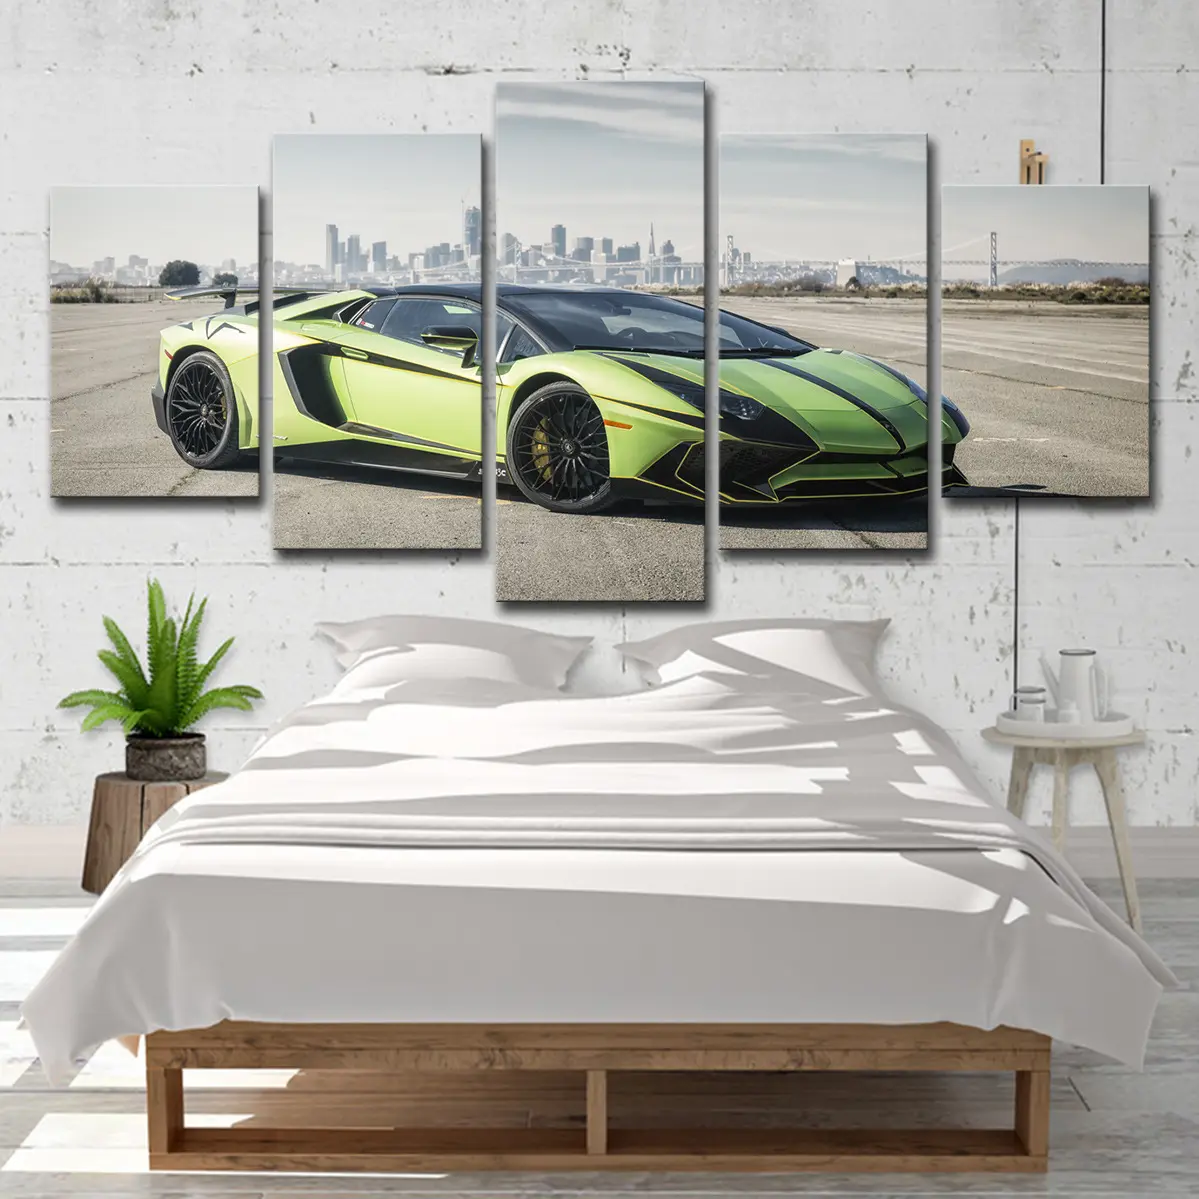 Alta risoluzione 5 pannelli pittura moderna arte della parete Poster Sport Super Car Lamborghini poliestere tela stampa con acqua